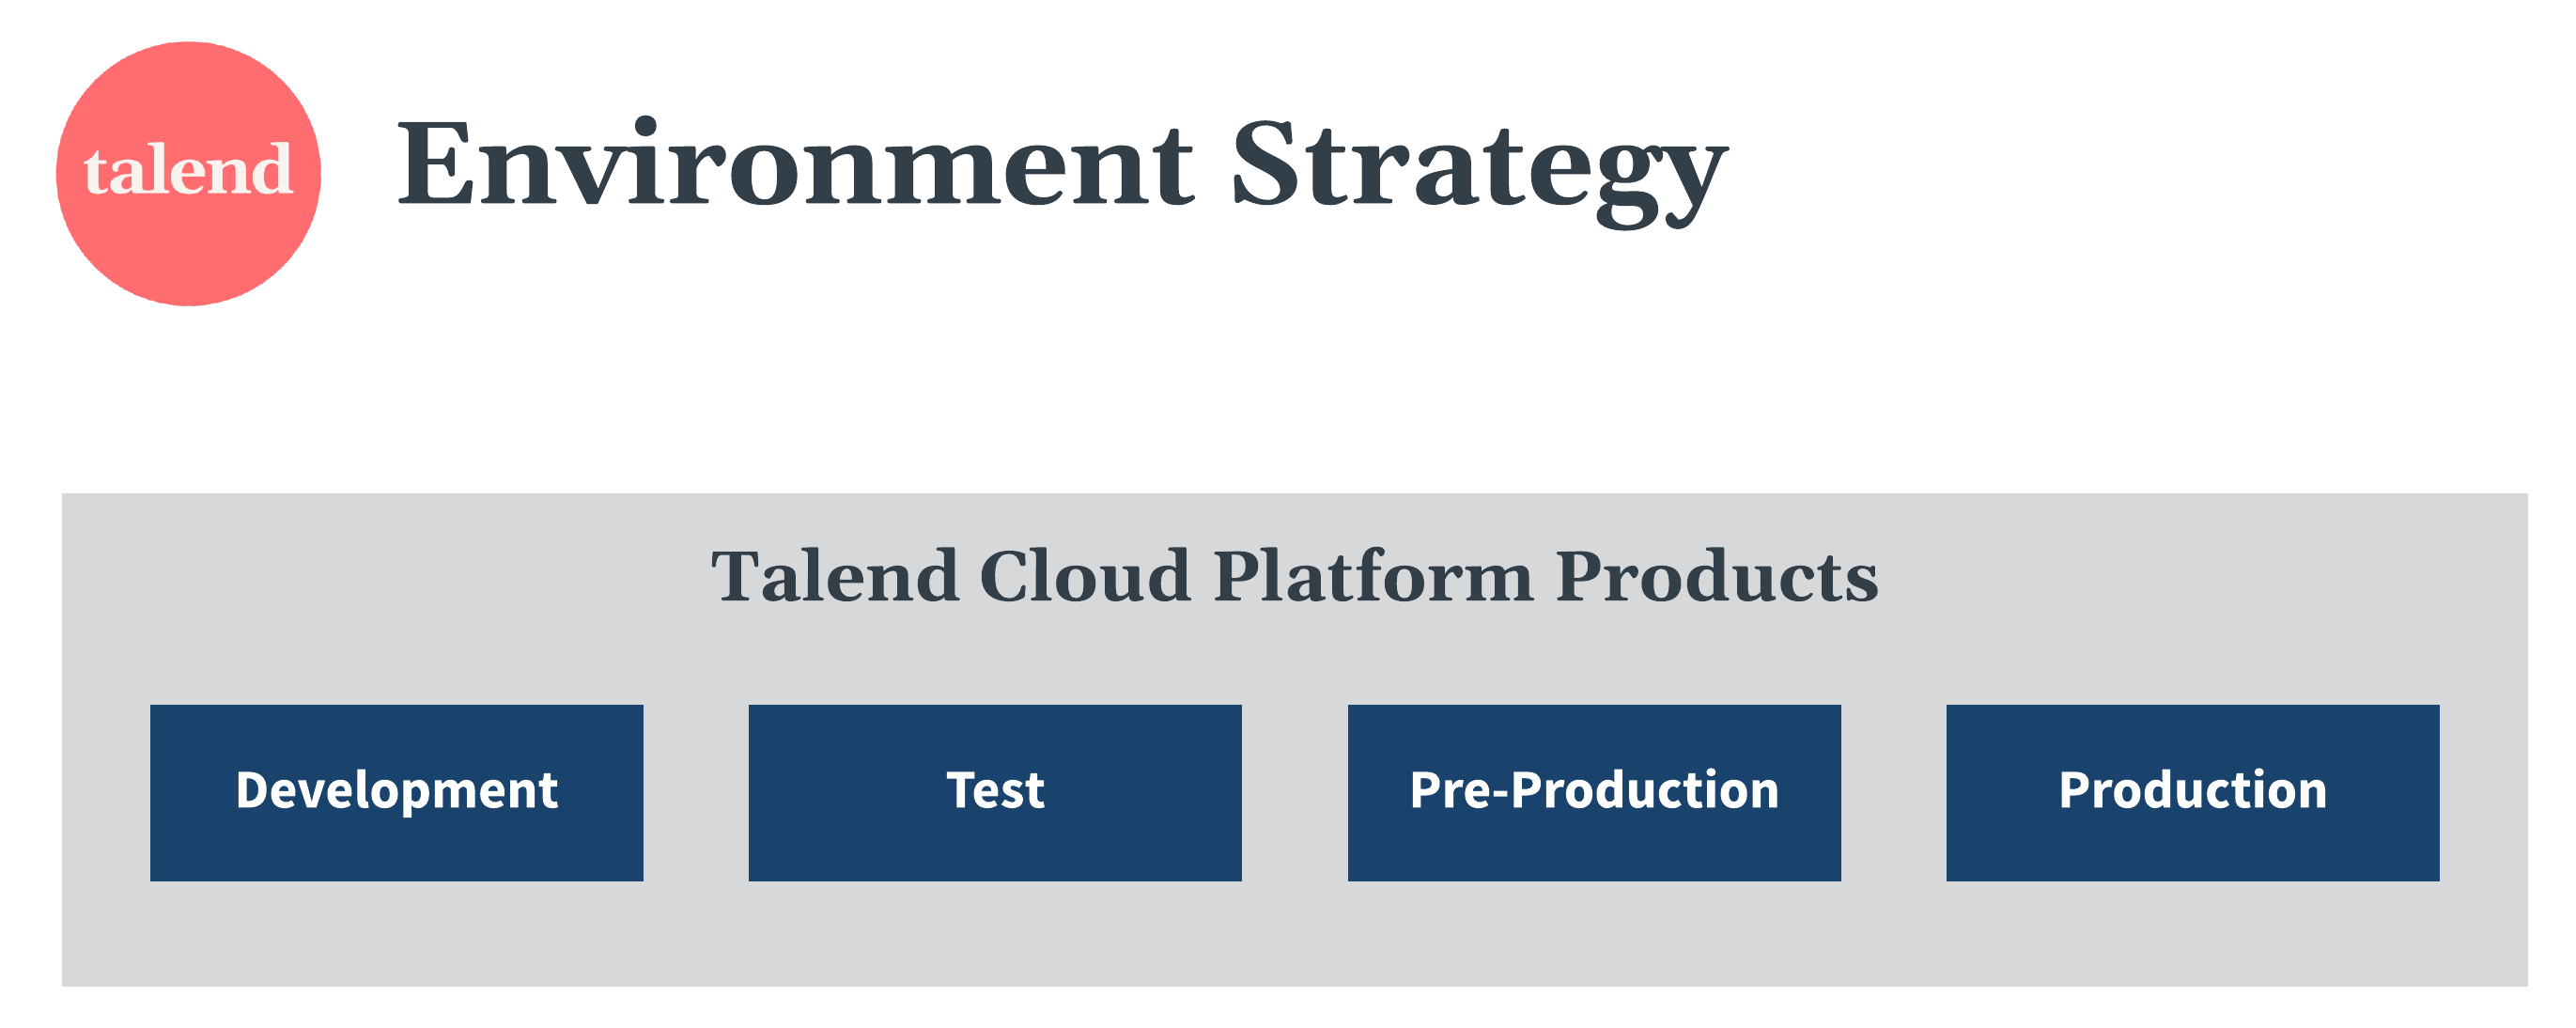 Diagramme de stratégie relative aux environnements des produits Talend Cloud Platform.